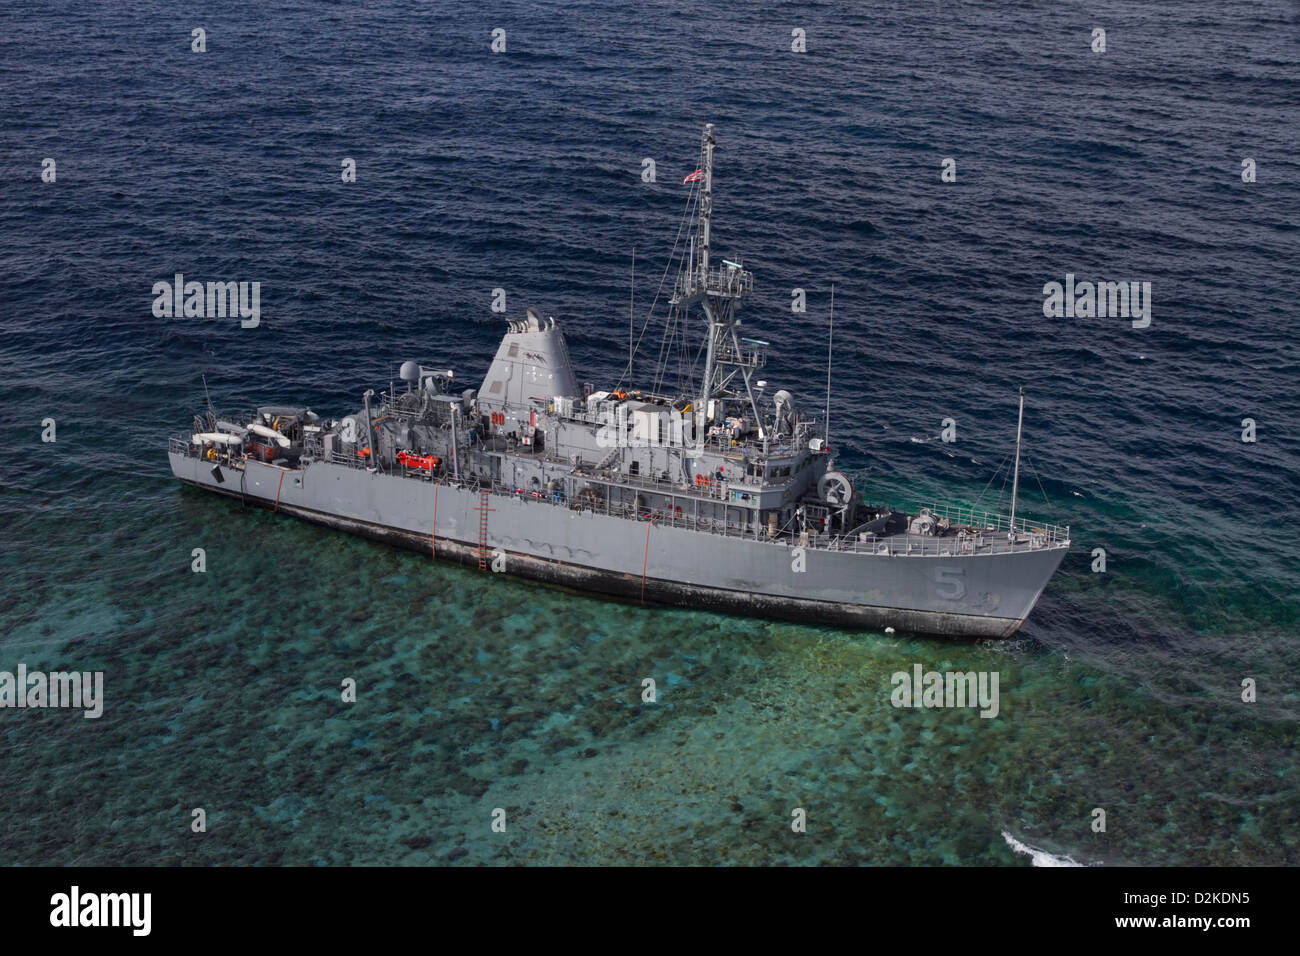 USS Guardian (MCM 5) sitzt auf Grund am Tubbataha Reef. Operationen, das Schiff sicher zu erholen, bei gleichzeitiger Minimierung der Auswirkungen auf die Umwelt werden in enger Zusammenarbeit mit Alliierten Philippinen Küstenwache und Marine durchgeführt. Stockfoto